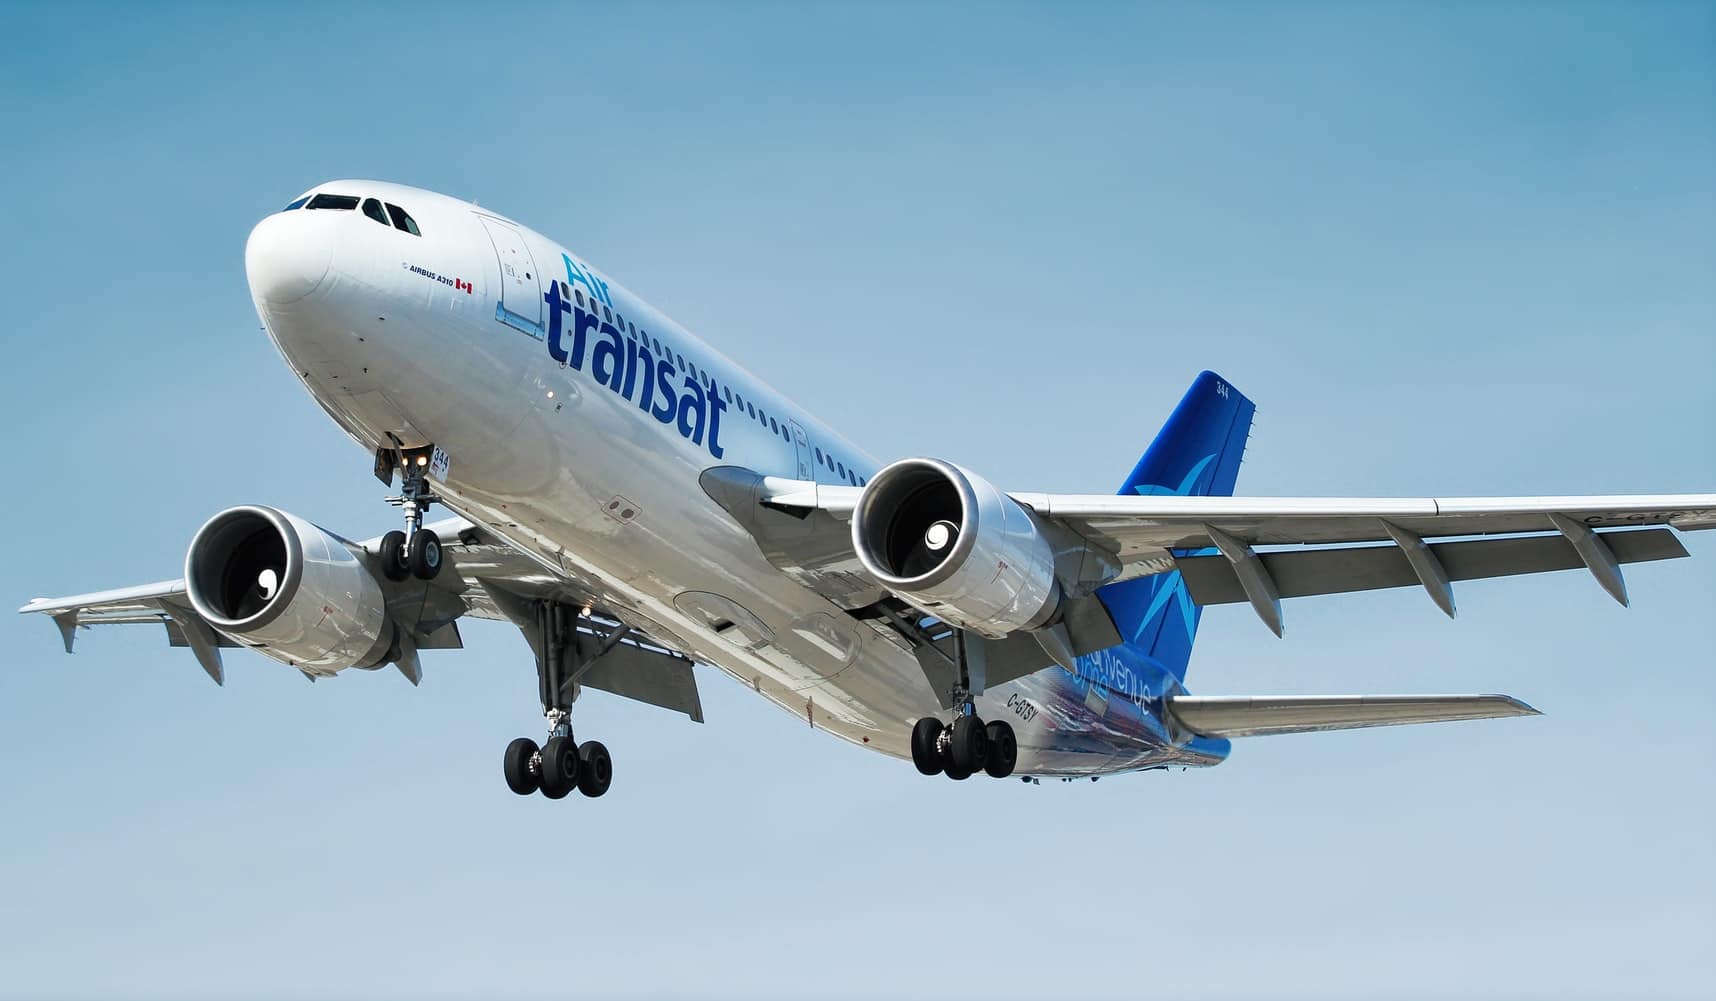 Air Transat temporarily suspends flight operations